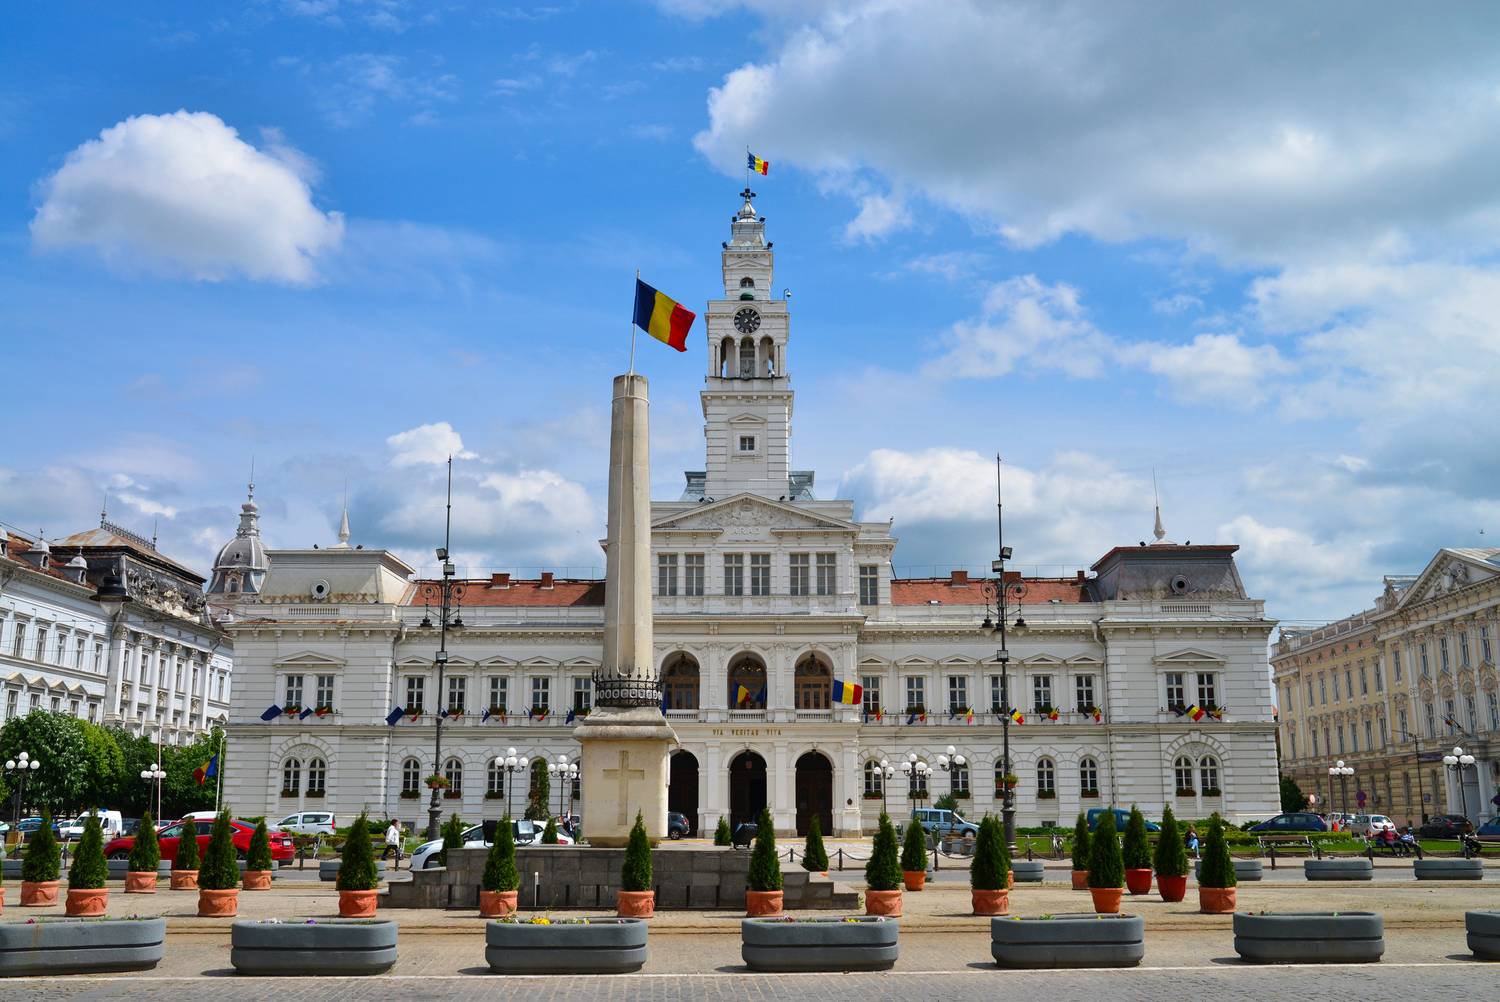 Arad központjában található impozáns látnivalója, a Városháza épülete. A 19. századból származó nevezetesség díszes, szép, freskókkal díszített és társadalmilag is jelentős helyszín, melyet Steindl Imre, a magyar Országház építésze tervezett.